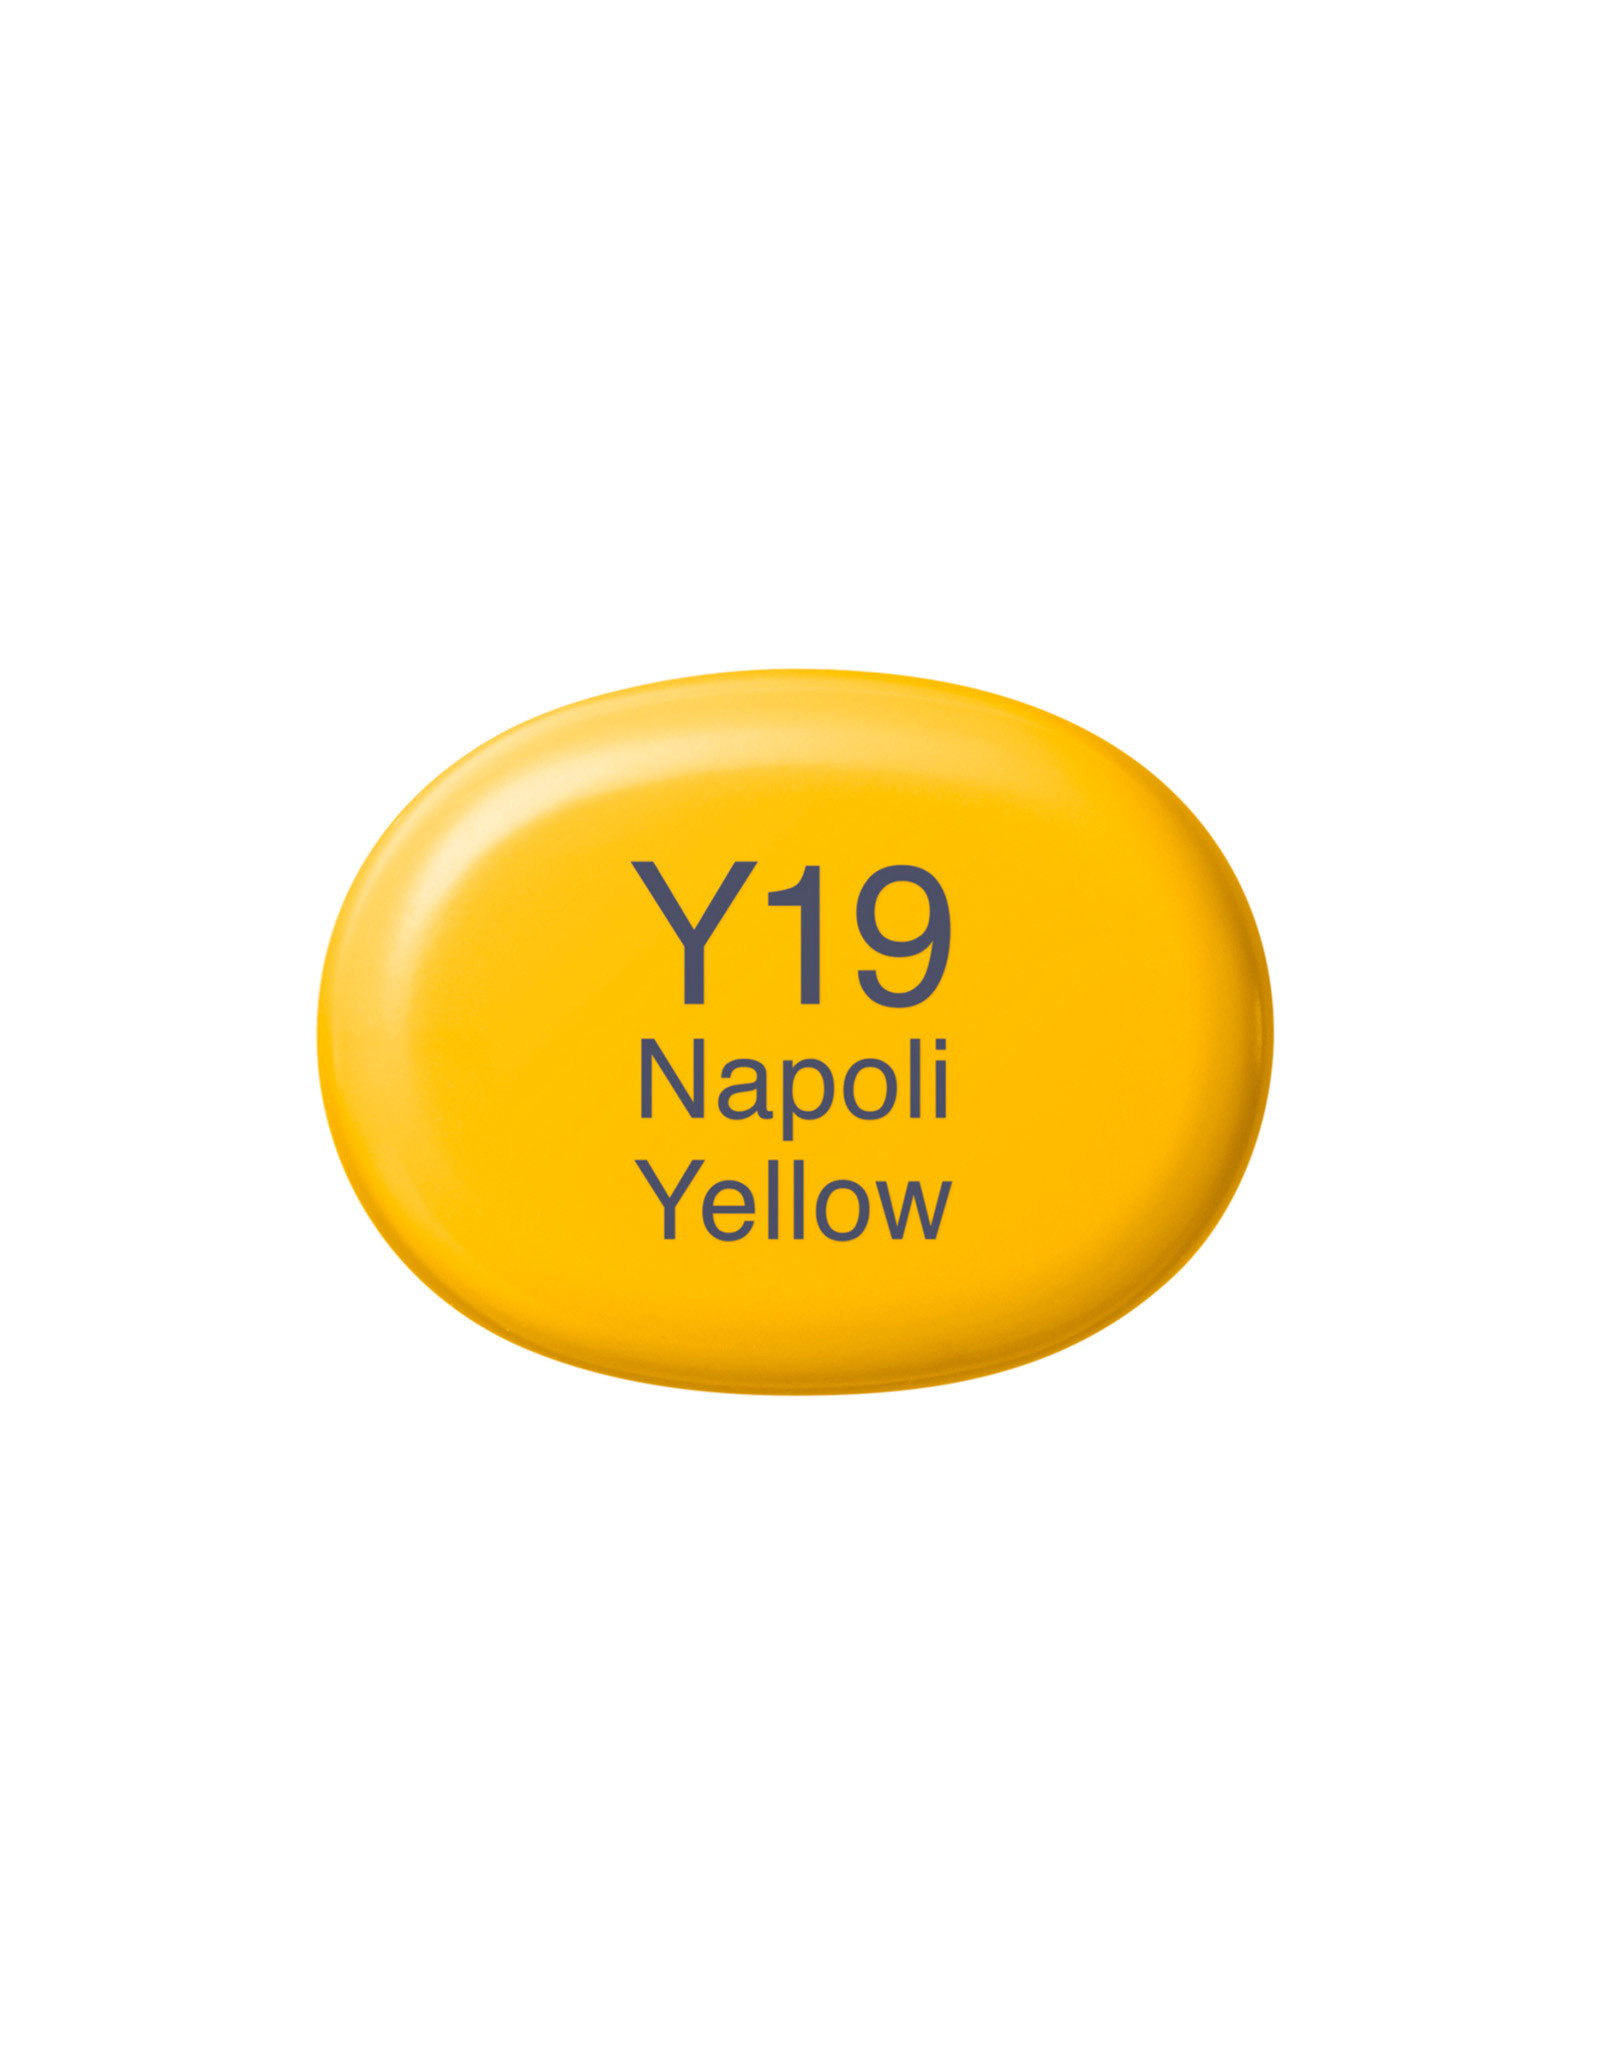 COPIC COPIC Sketch Marker Y19 Napoli Yellow